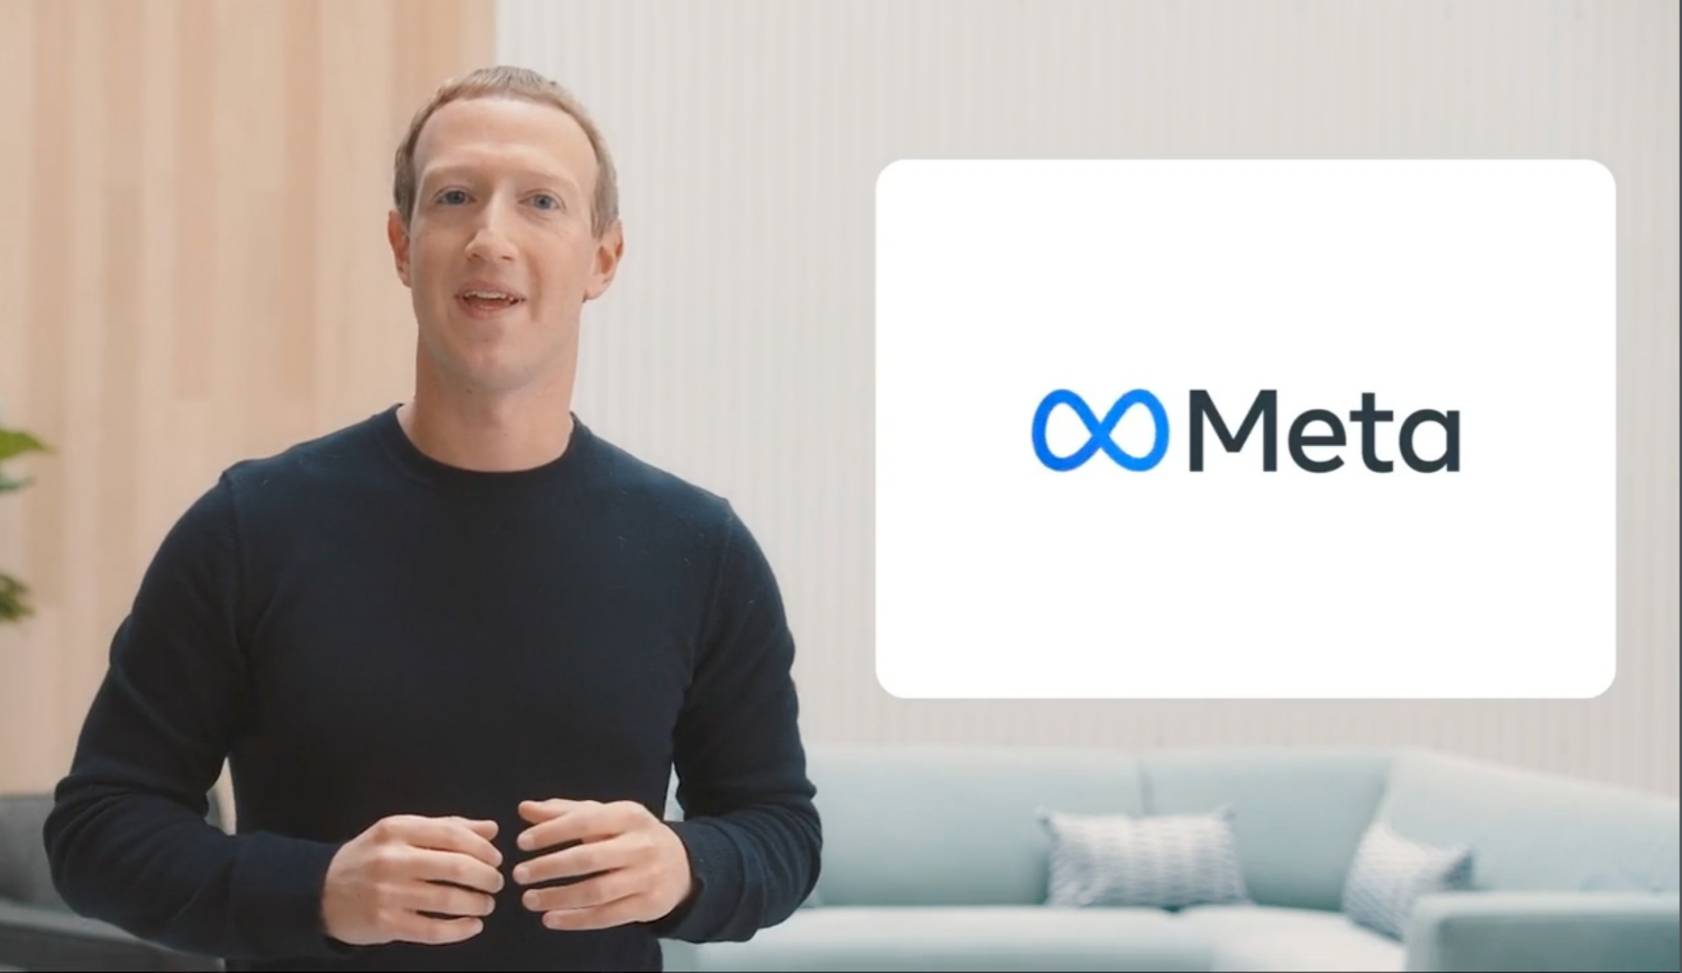 เฟซบุ๊ก เปลี่ยนชื่อใหม่เป็น Meta – IT